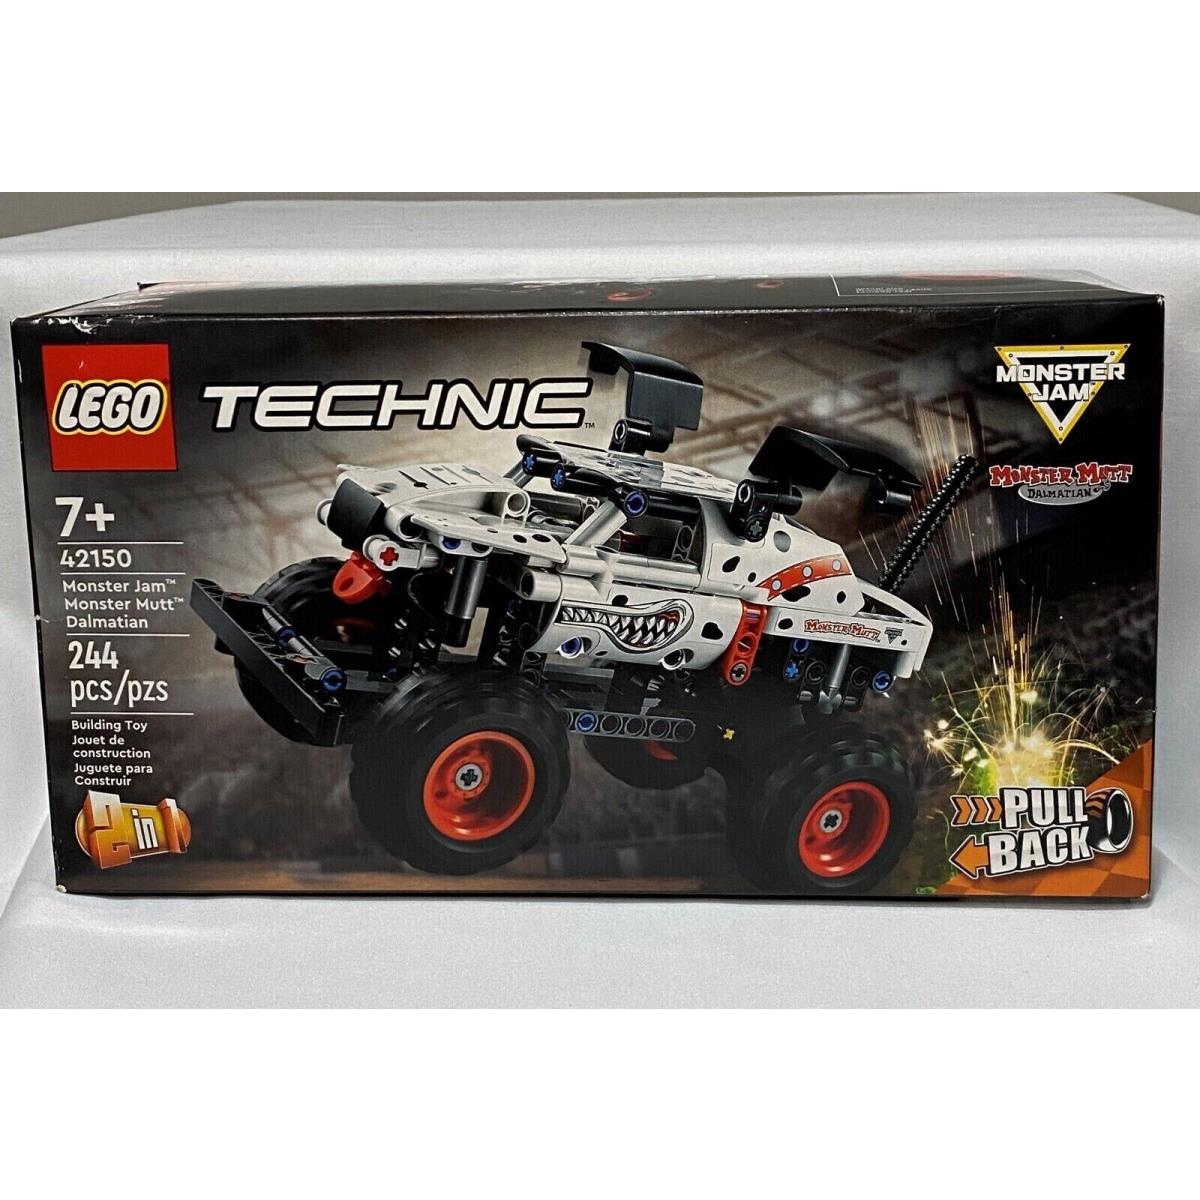 Lego Technic: Monster Jam Monster Mutt Dalmatian 42150